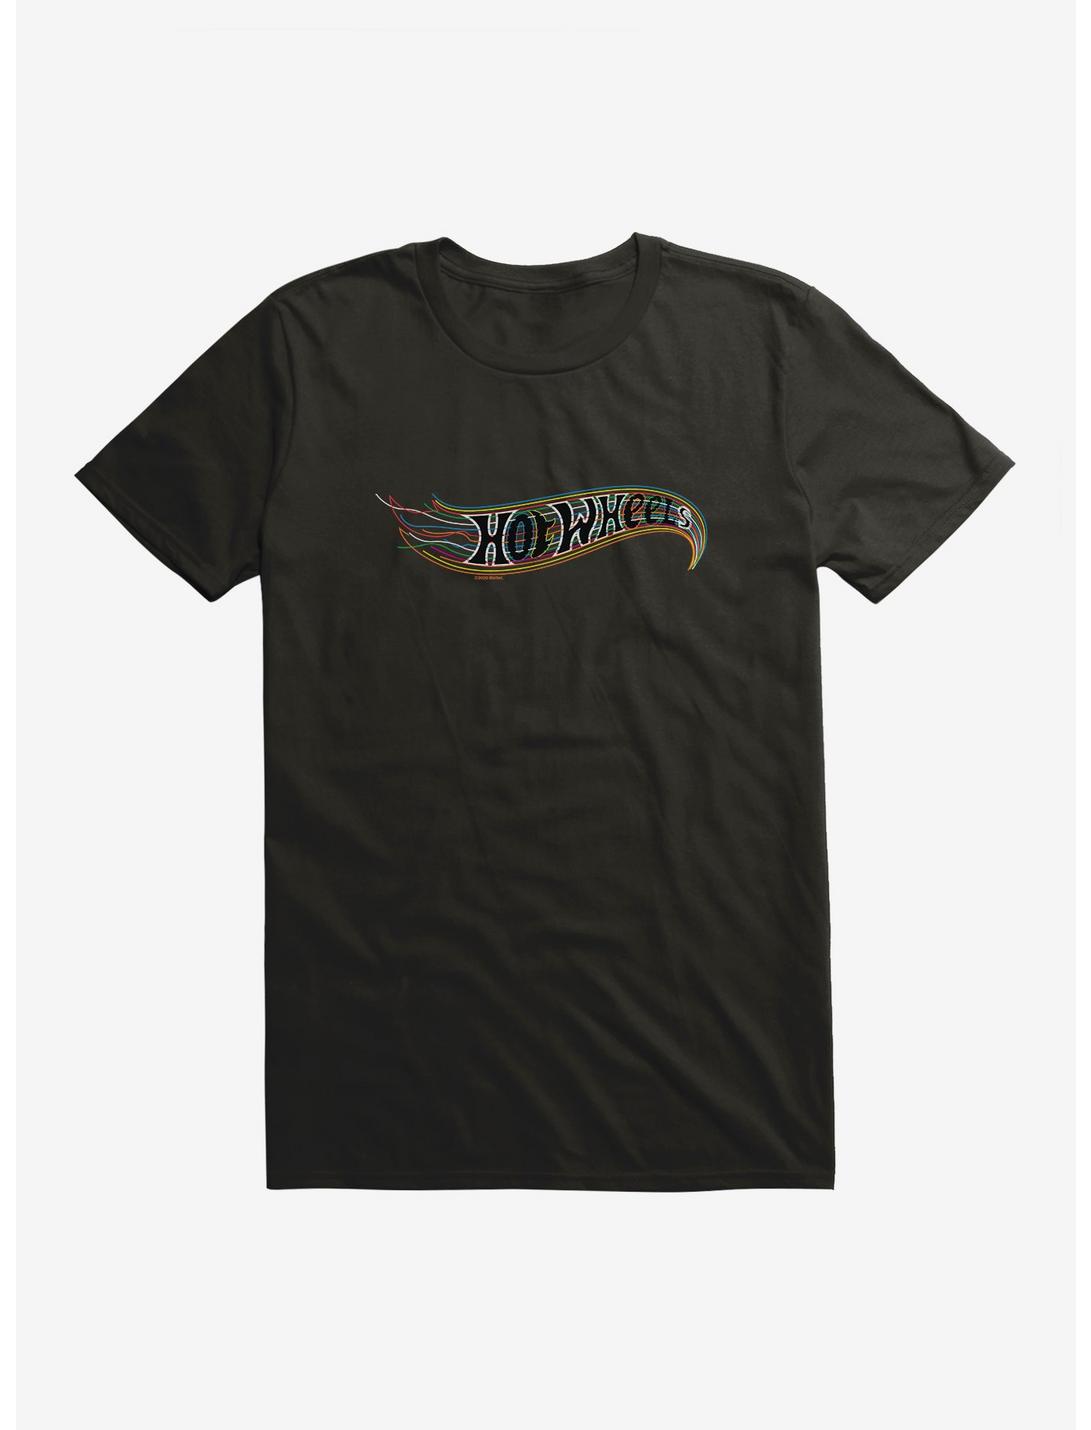 Hot Wheels Bold Pop Logo T-Shirt, BLACK, hi-res